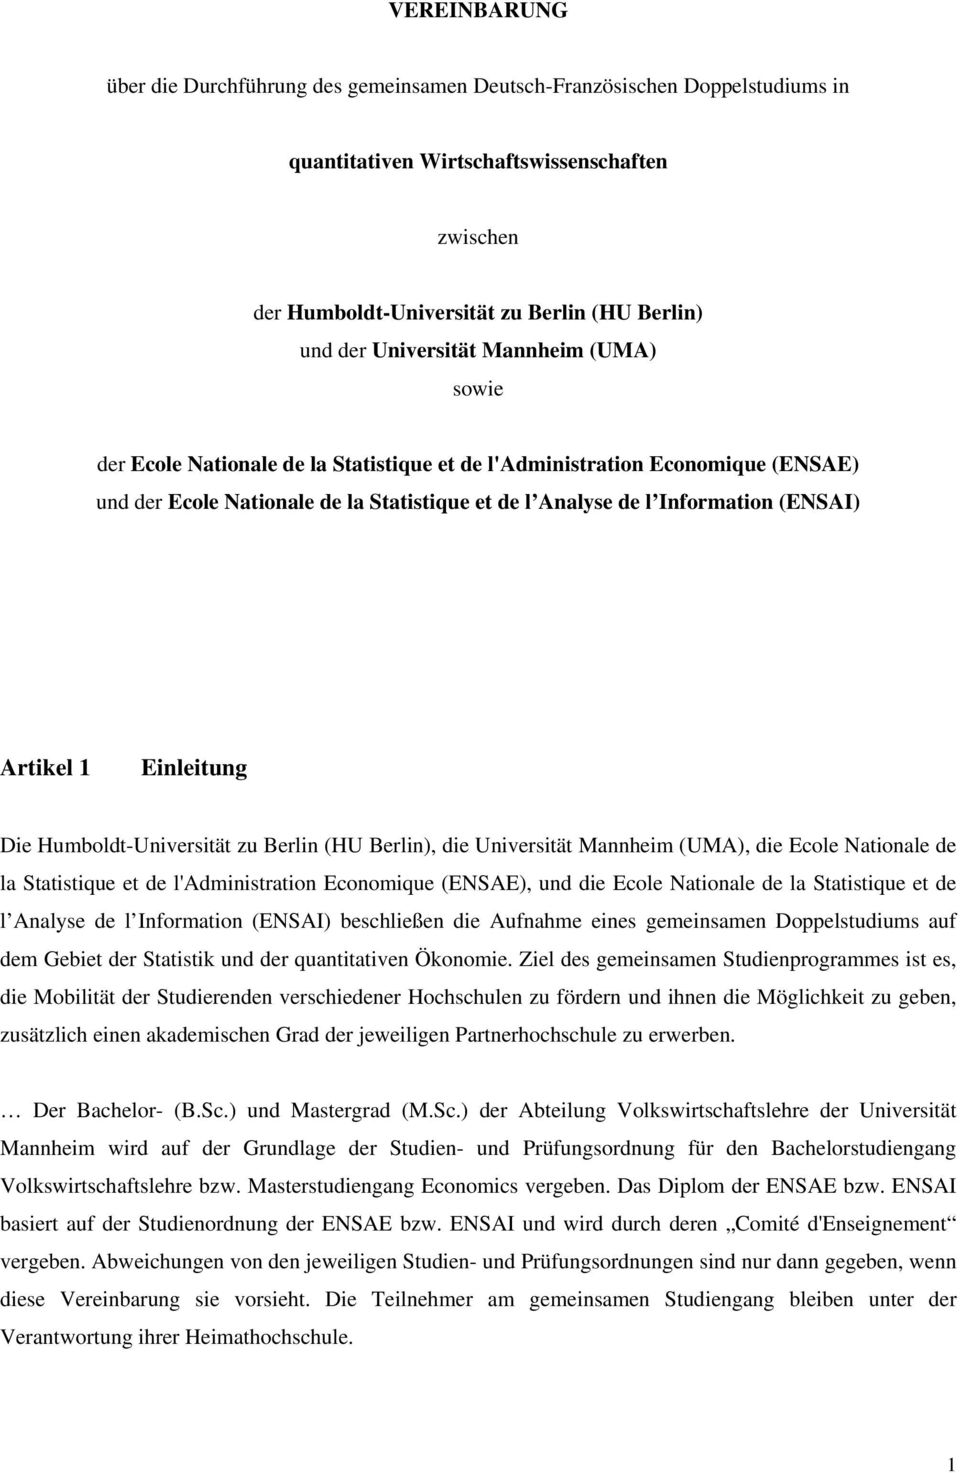 Artikel 1 Einleitung Die Humboldt-Universität zu Berlin (HU Berlin), die Universität Mannheim (UMA), die Ecole Nationale de la Statistique et de l'administration Economique (ENSAE), und die Ecole